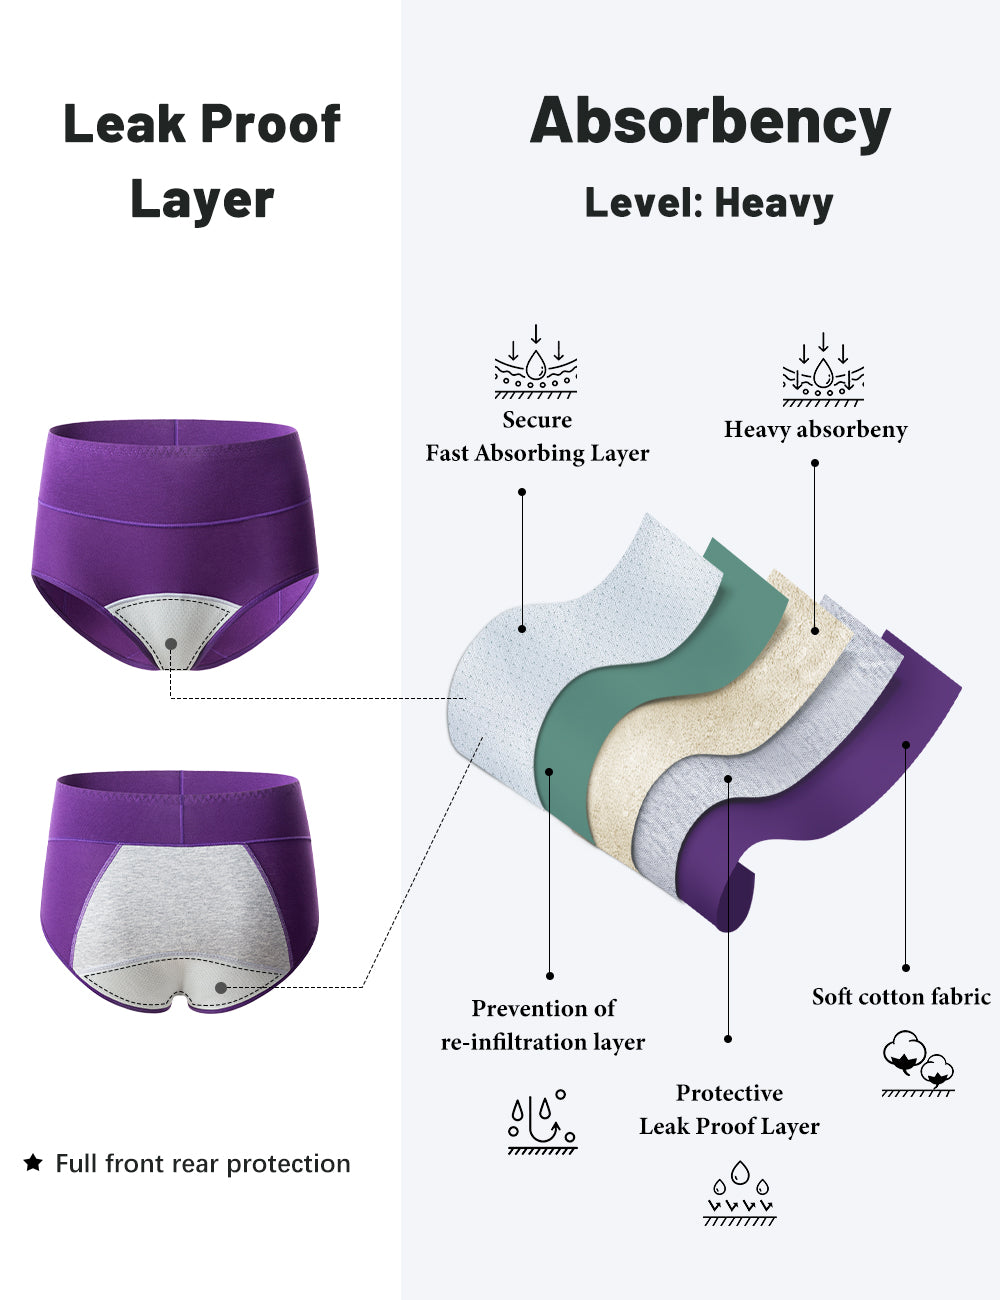 POKARLA Women's Period Cotton Underwear Heavy Flow Leakproof Panties P